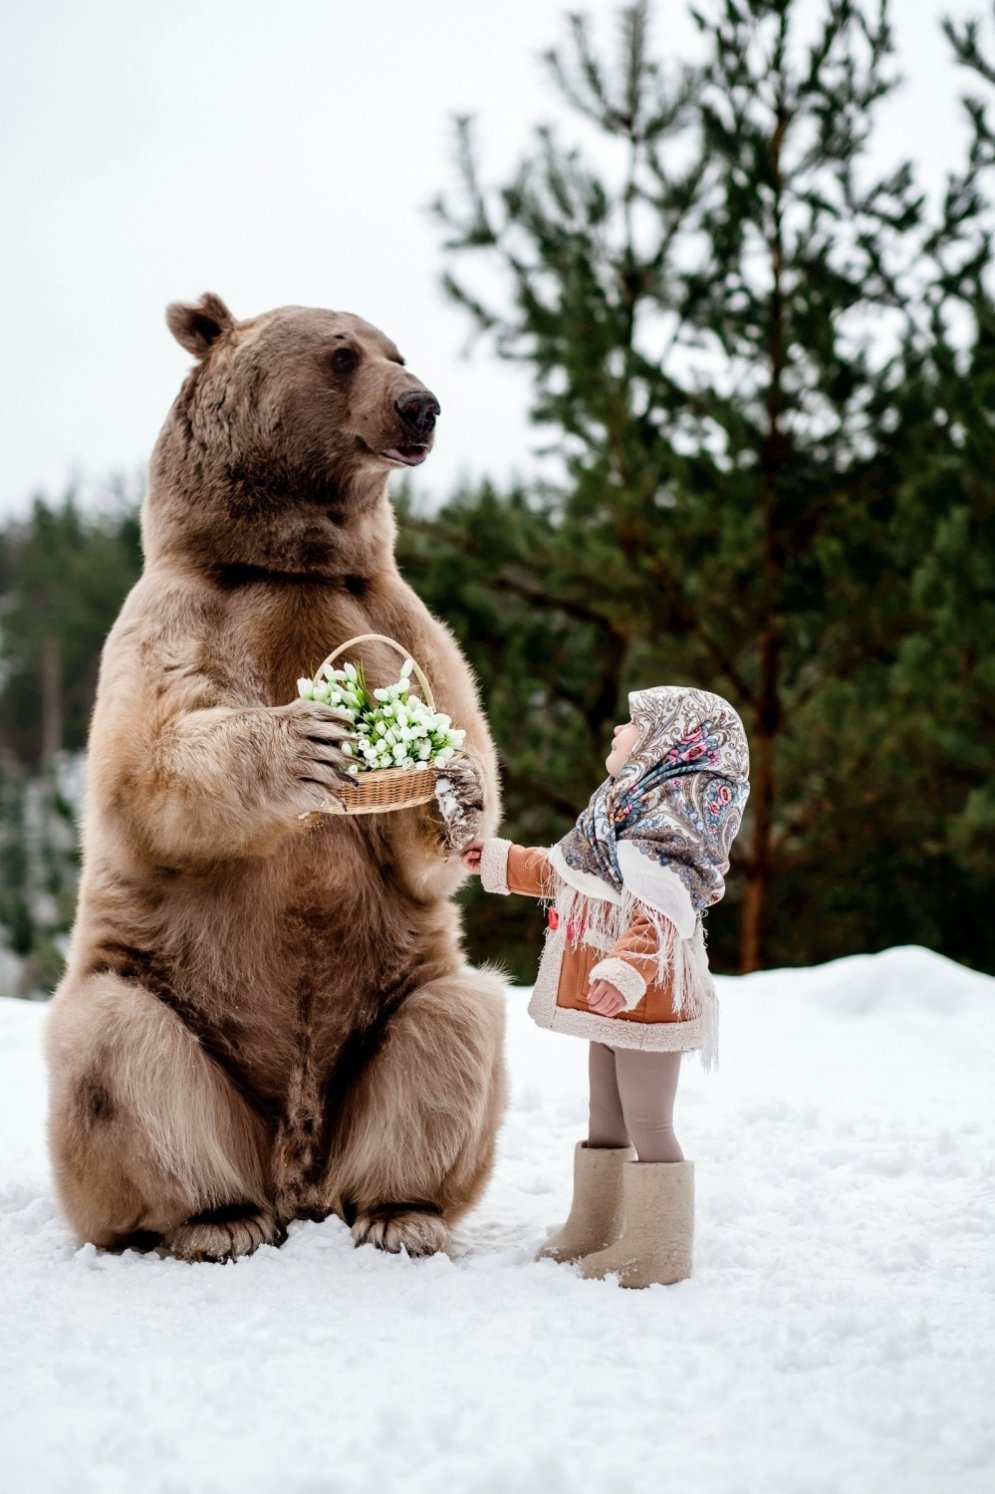 Neticami kadri: Bērni ar milzu lāci Maskavas mežos